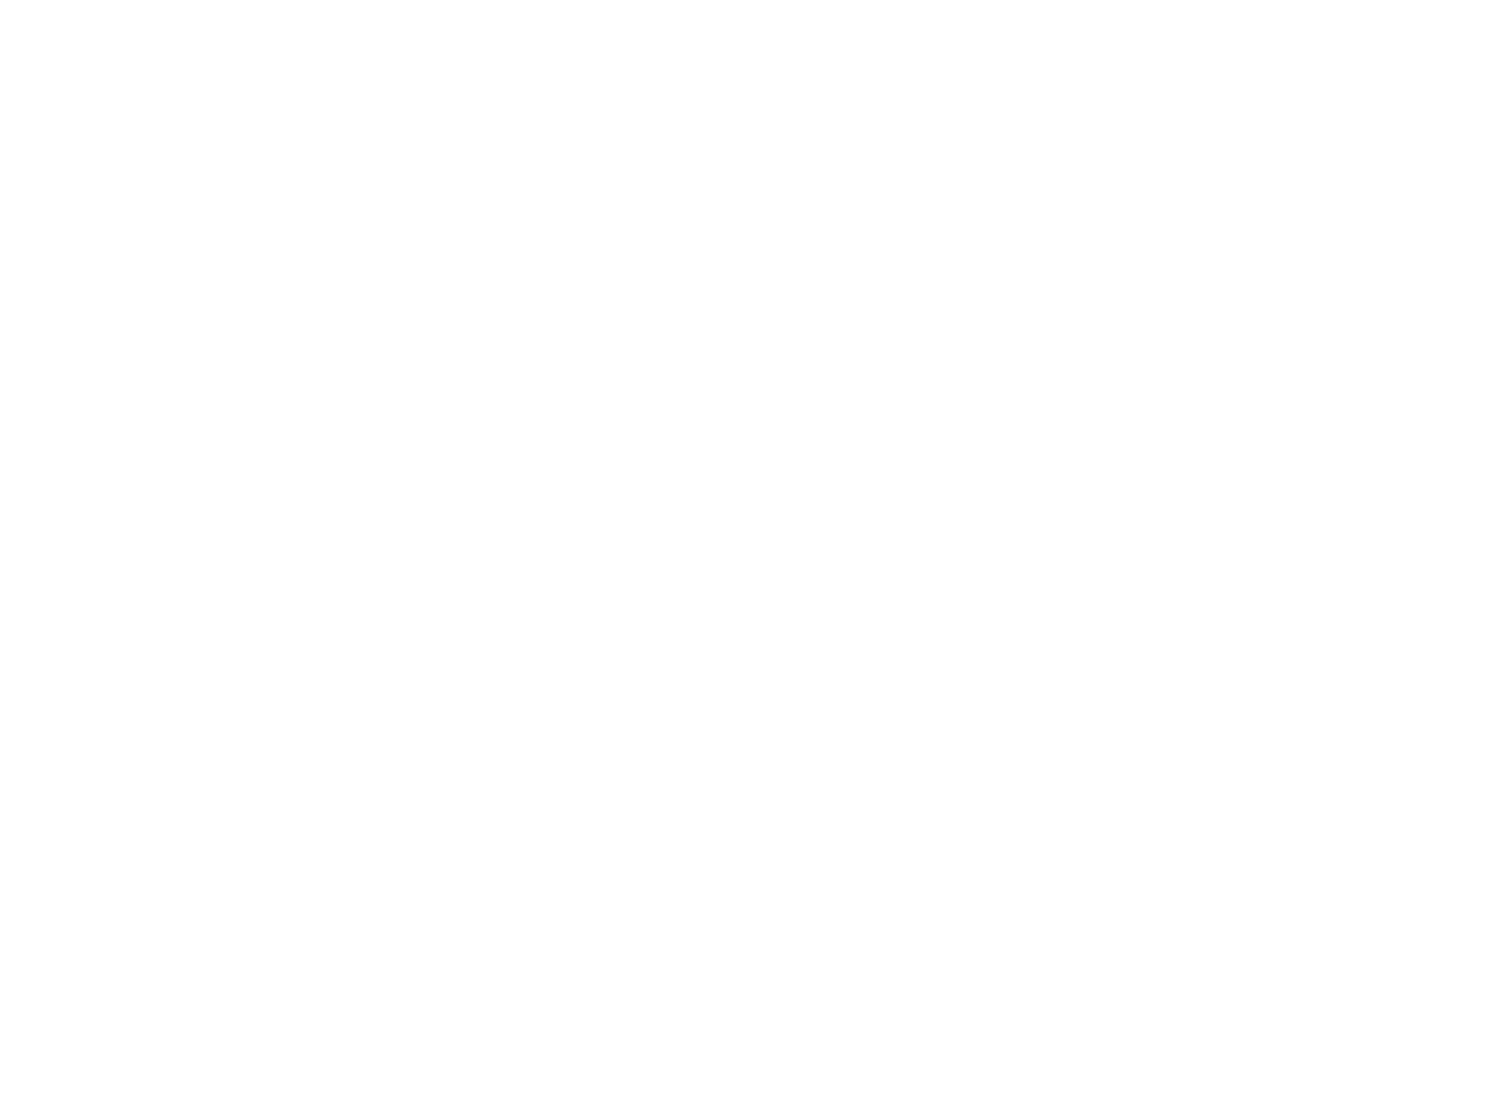 Workbench